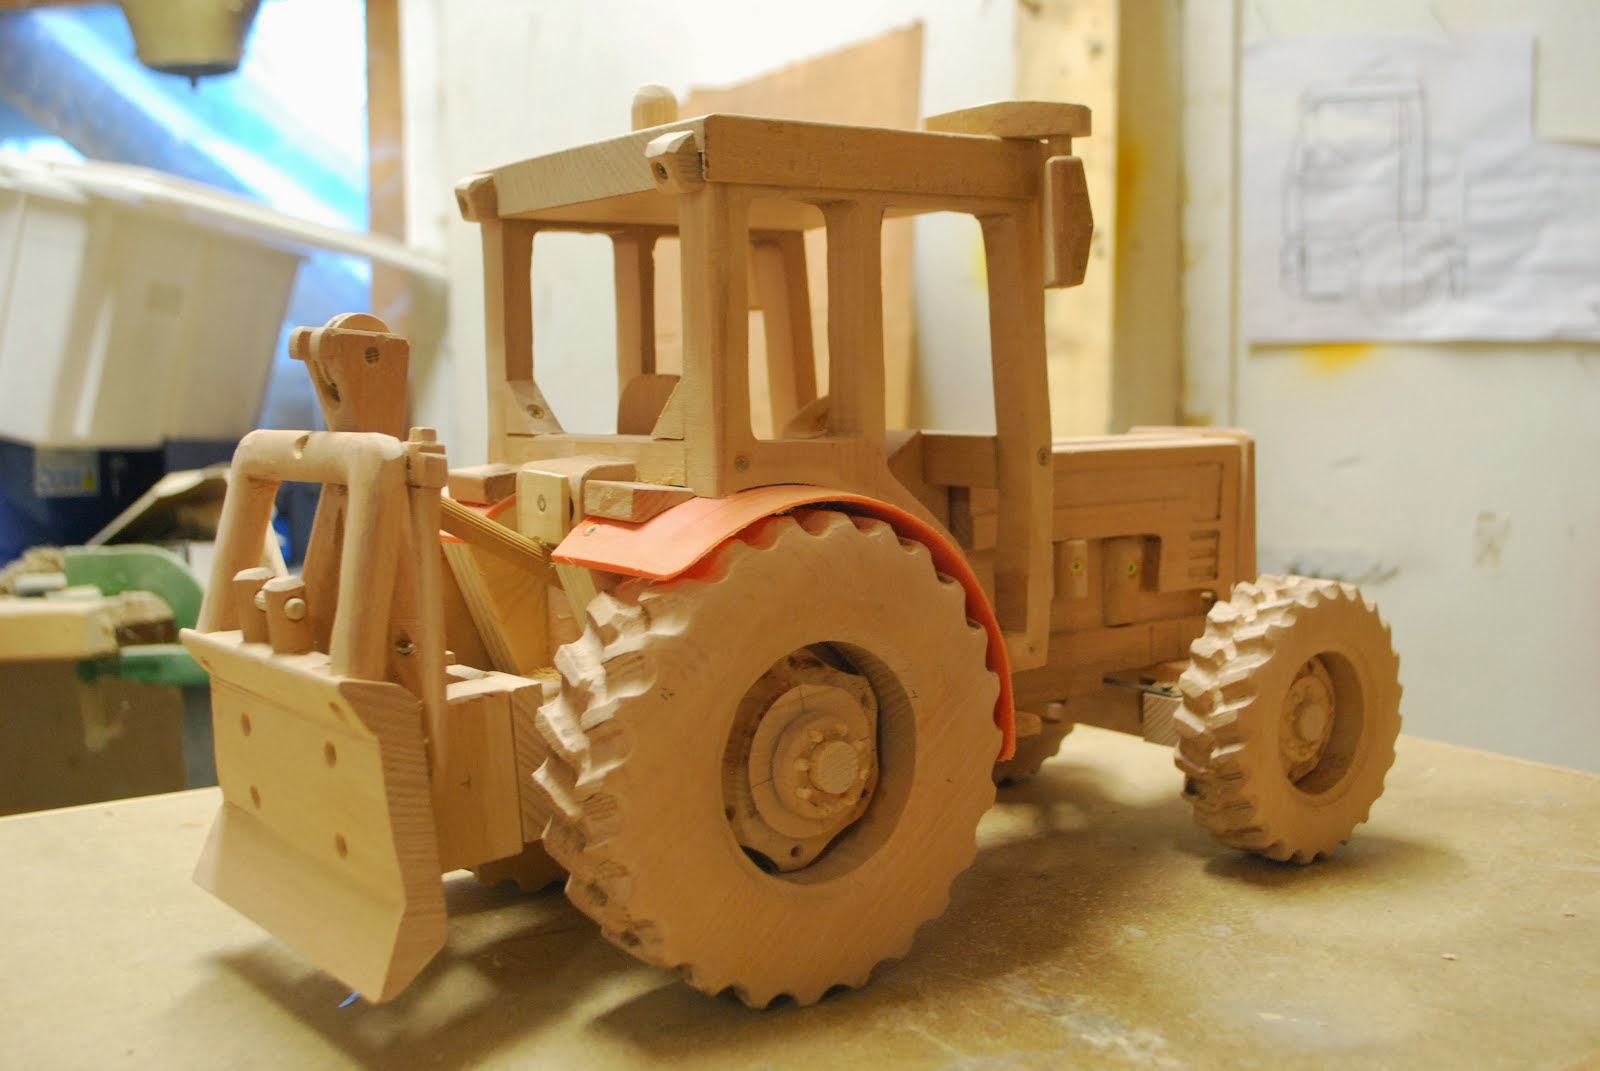 Una foto del modellino prima della verniciatura il trattore ¨ stato costruito in legno di faggio autoctono dei boschi del Trentino